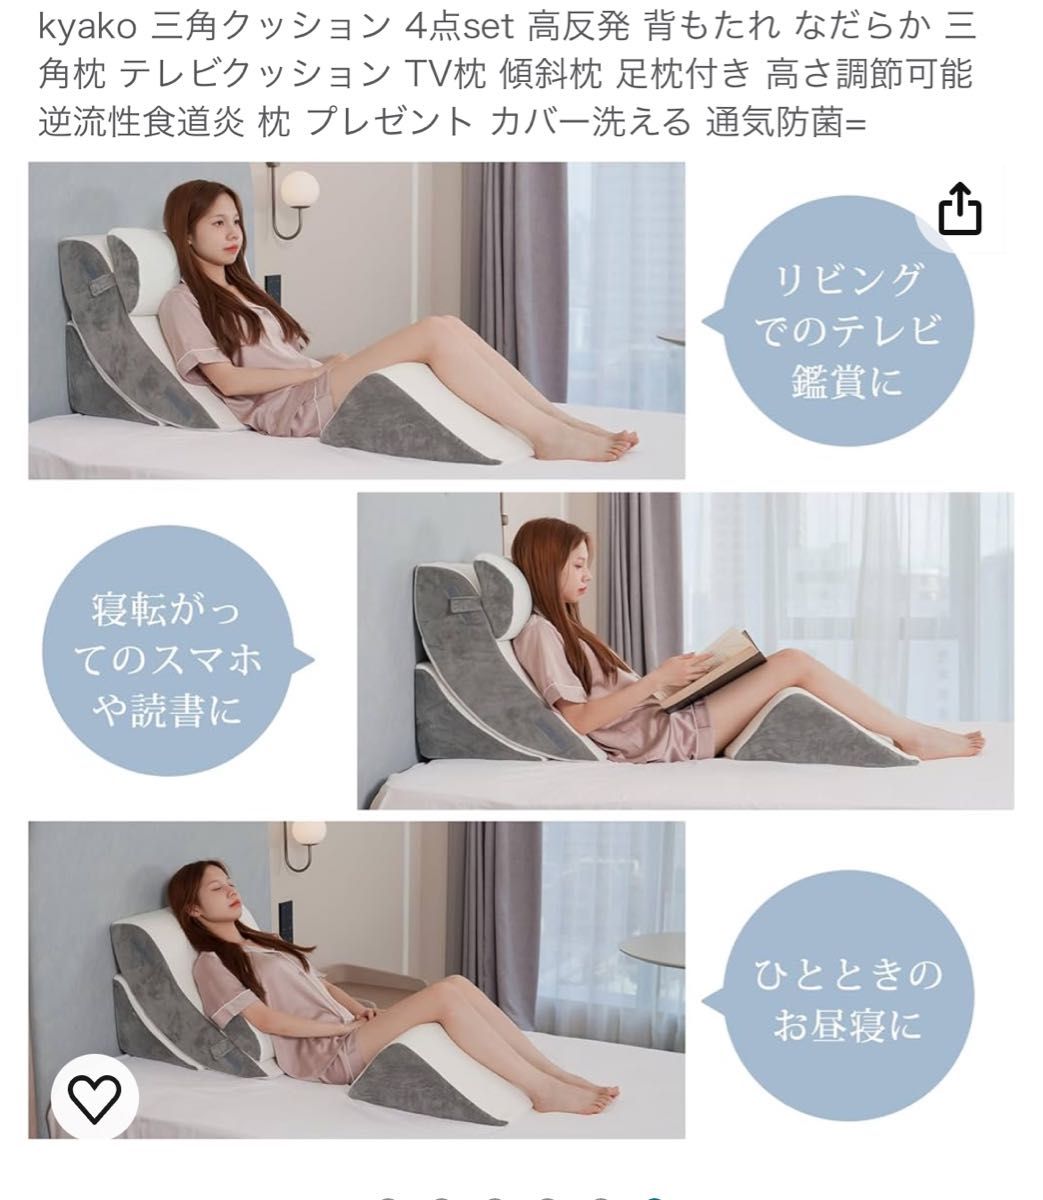 kyako 三角クッション 4点set 高反発 背もたれ なだらか 三角枕 テレビクッション TV枕 傾斜枕 足枕付き 